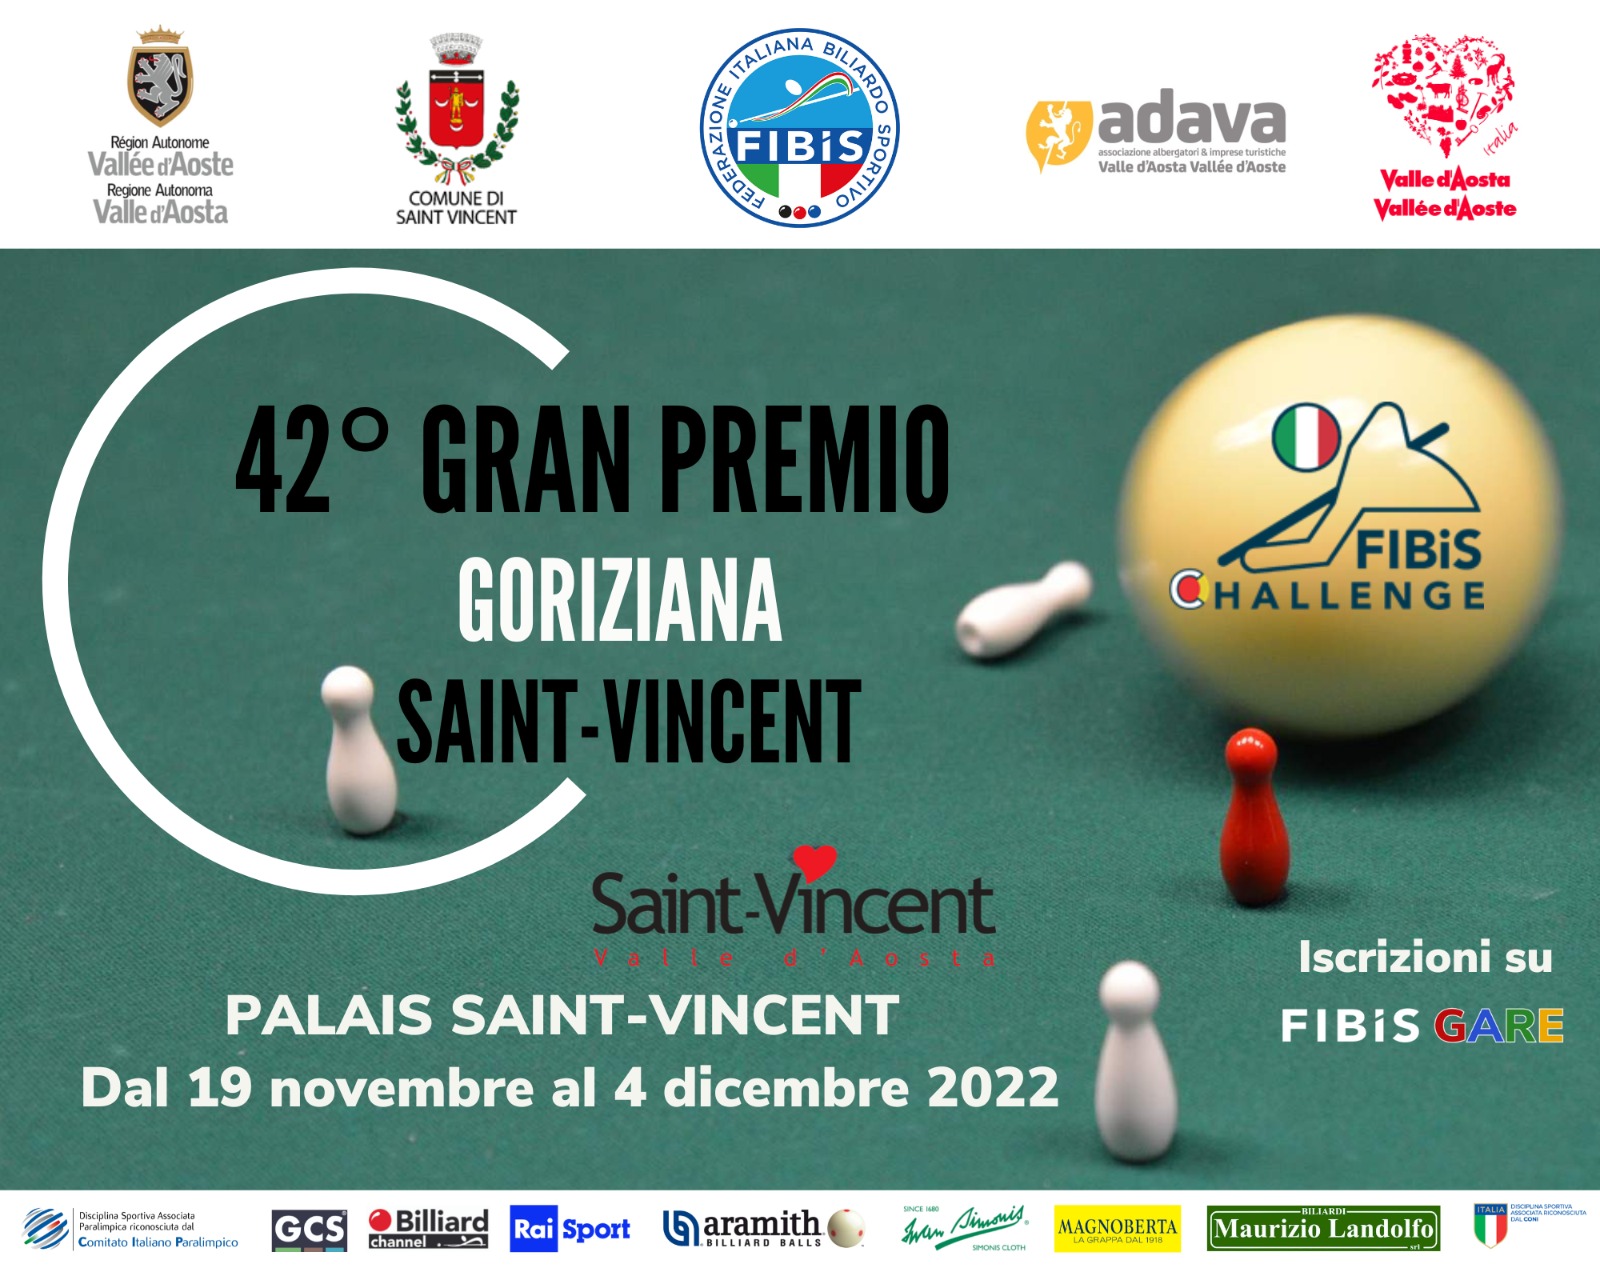 42° GRAN PREMIO GORIZIANA - SAINT-VINCENT 2022: APERTURA ISCRIZIONI 